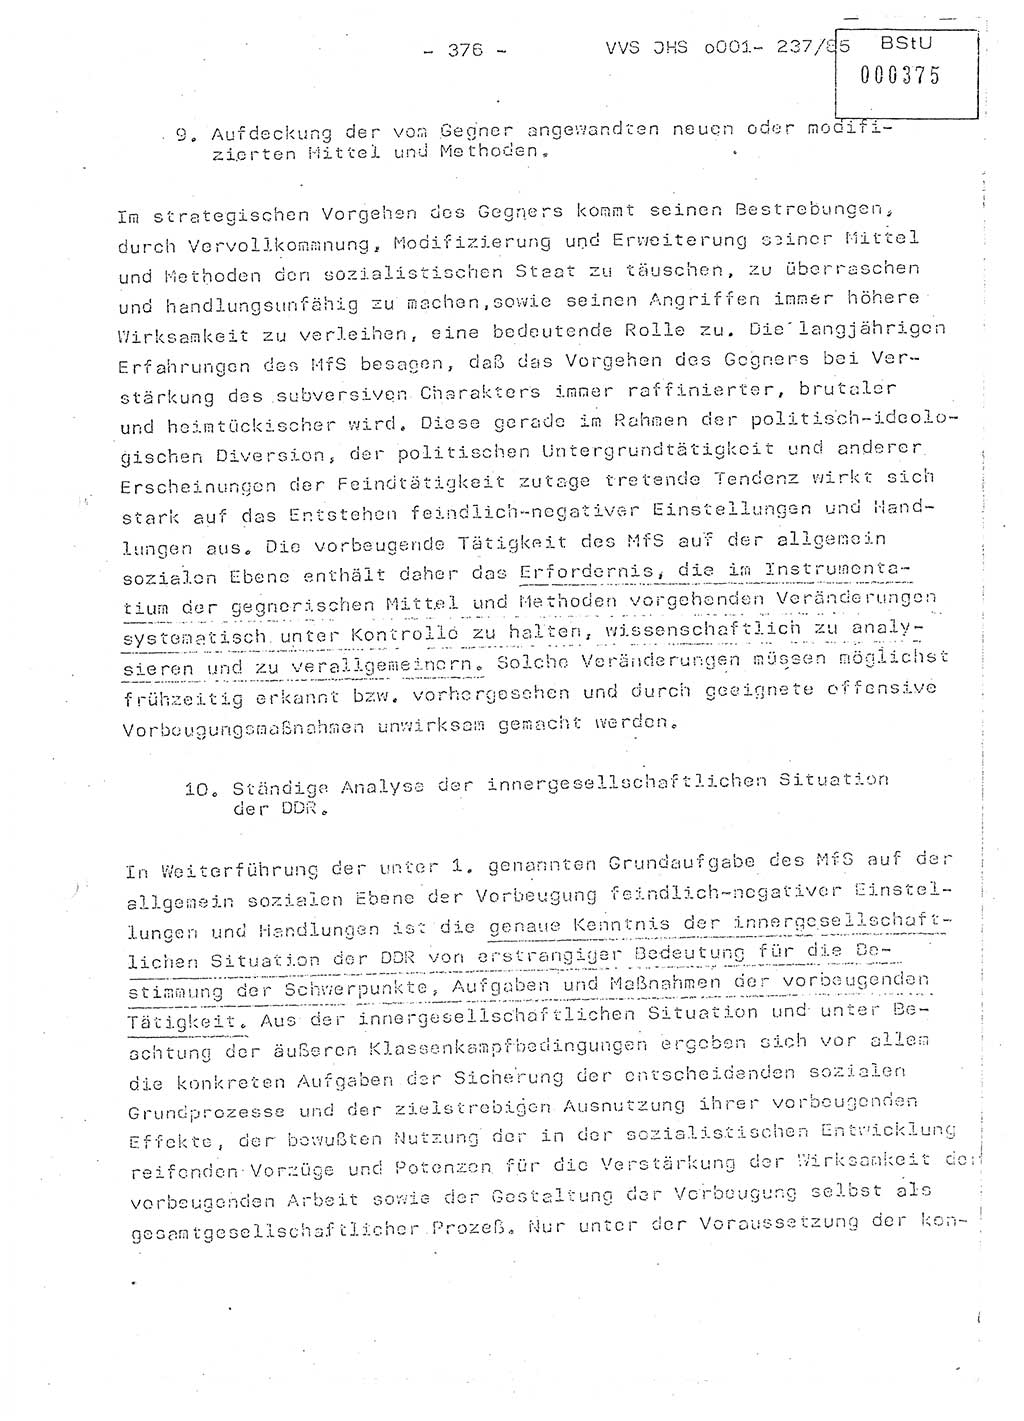 Dissertation Oberstleutnant Peter Jakulski (JHS), Oberstleutnat Christian Rudolph (HA Ⅸ), Major Horst Böttger (ZMD), Major Wolfgang Grüneberg (JHS), Major Albert Meutsch (JHS), Ministerium für Staatssicherheit (MfS) [Deutsche Demokratische Republik (DDR)], Juristische Hochschule (JHS), Vertrauliche Verschlußsache (VVS) o001-237/85, Potsdam 1985, Seite 376 (Diss. MfS DDR JHS VVS o001-237/85 1985, S. 376)